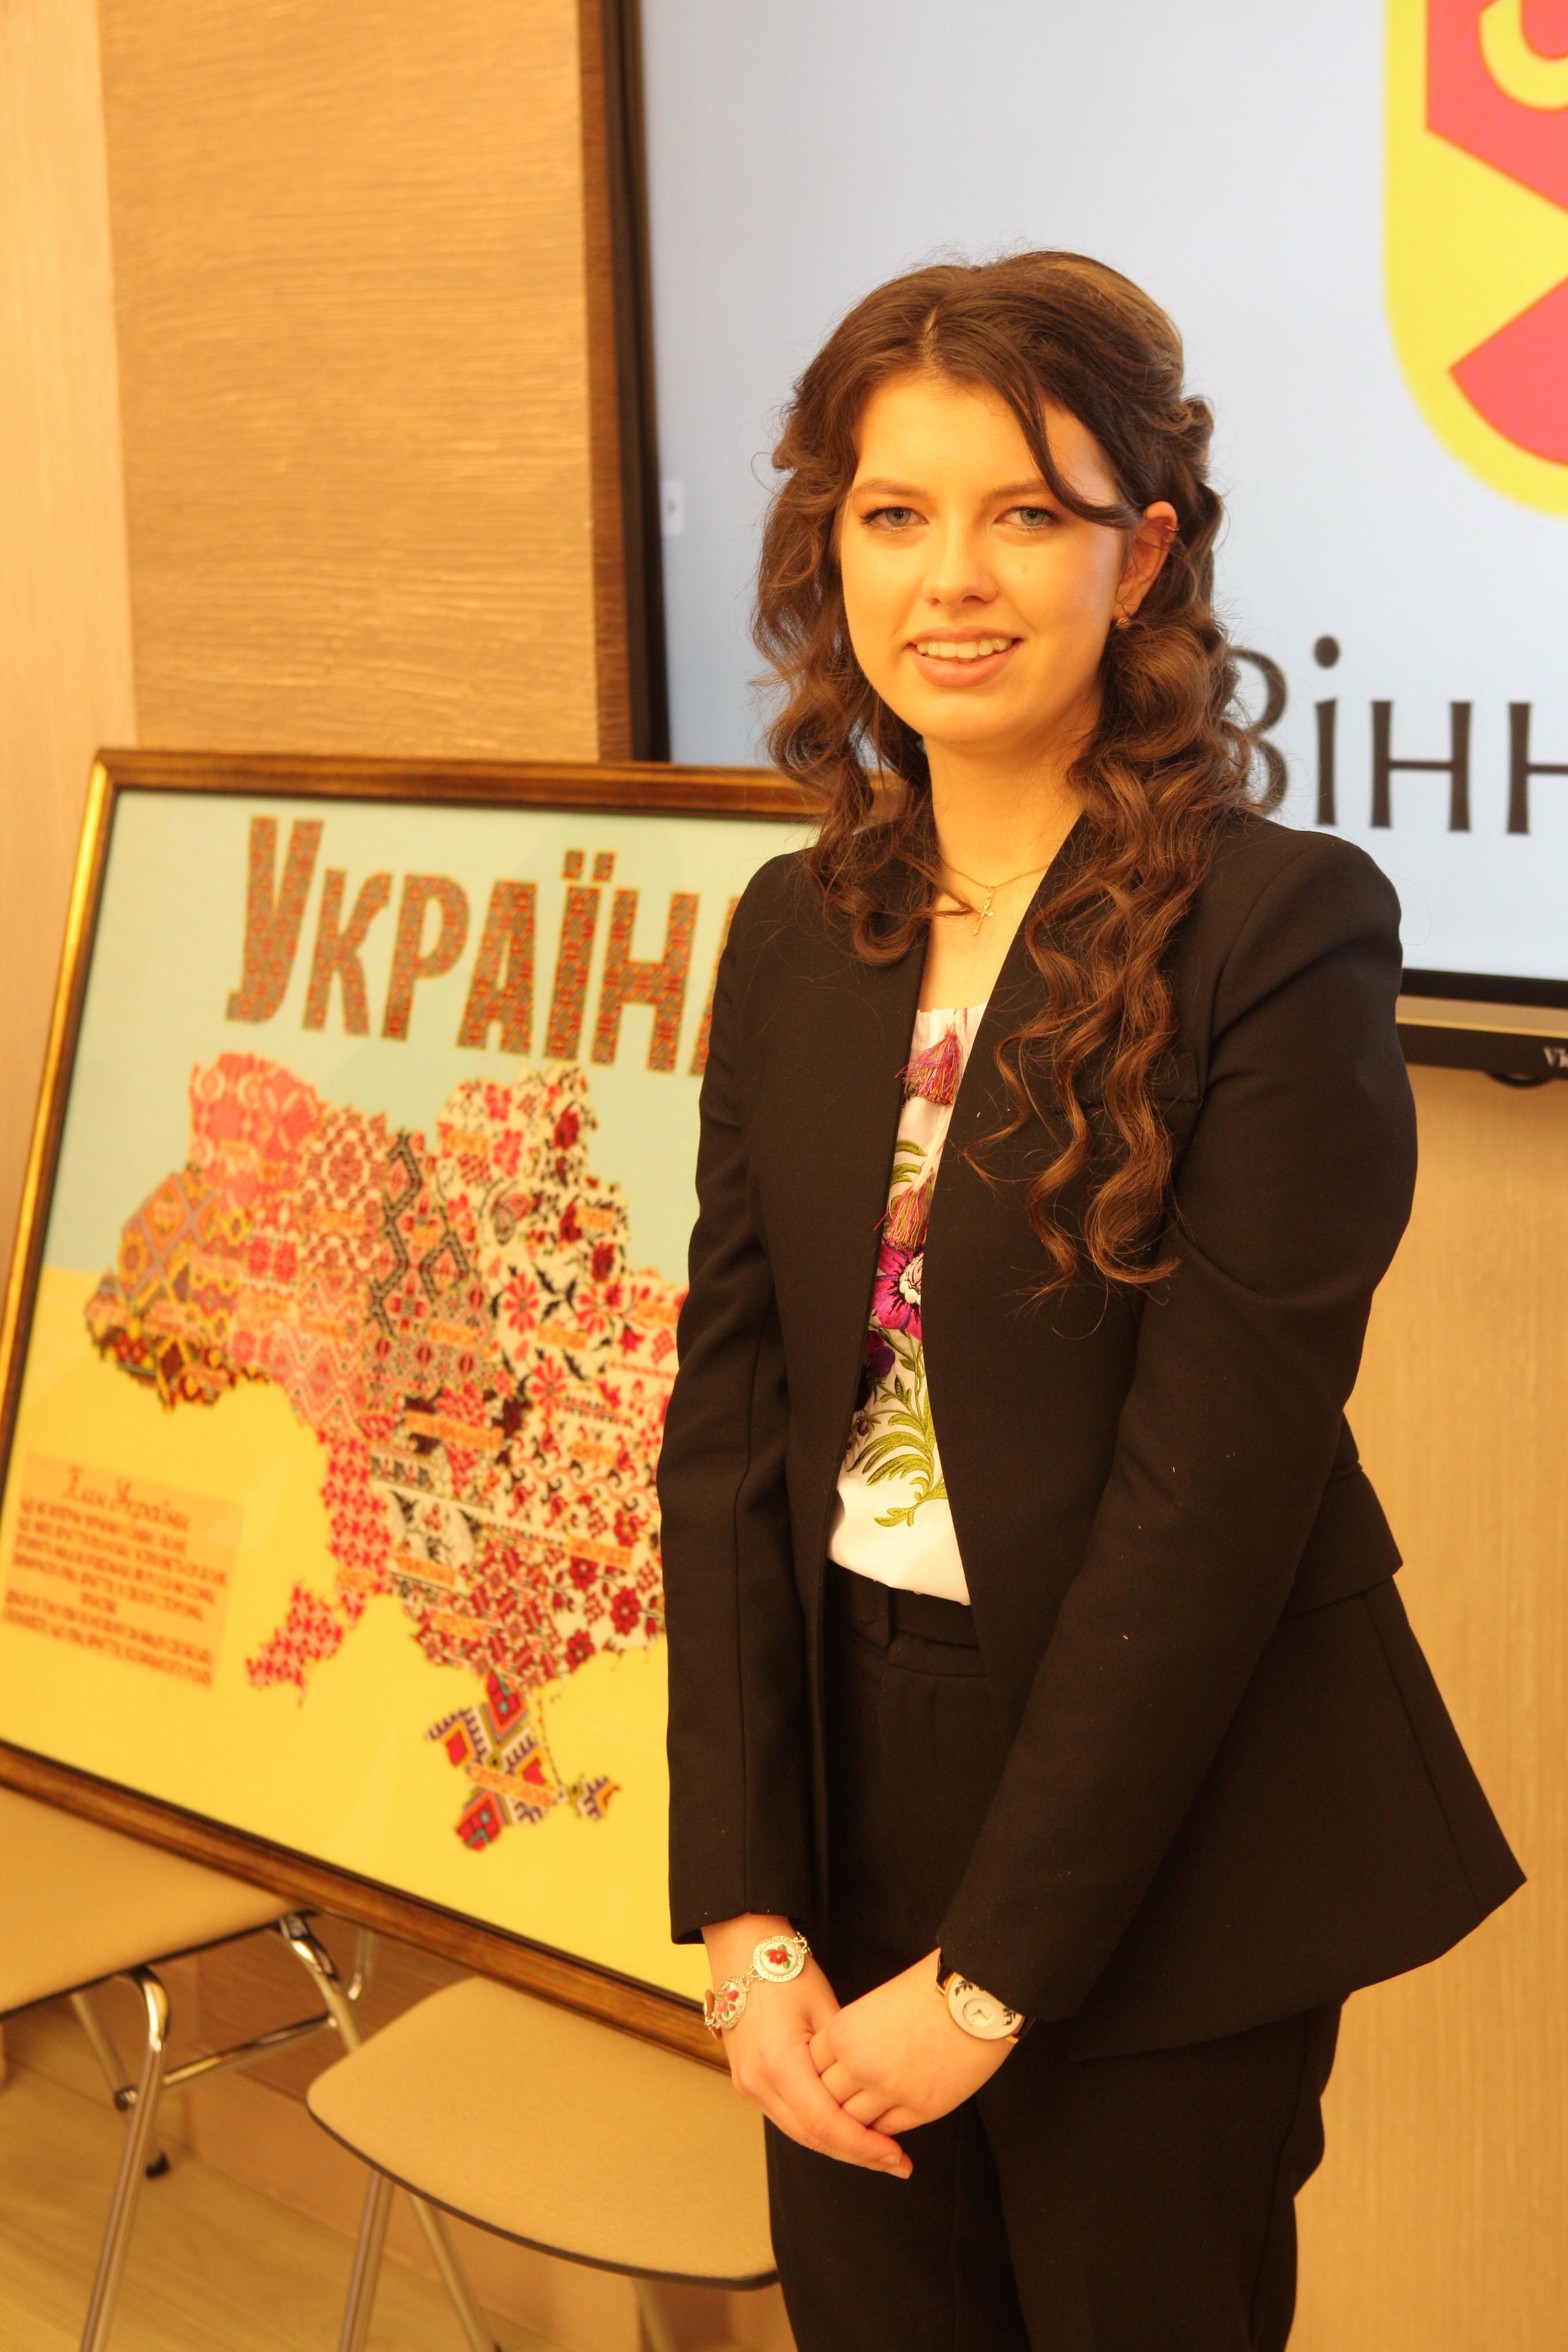 15-річна дівчина з Вінниці вишила мапу України та потрапила до книги рекордів (Фото)